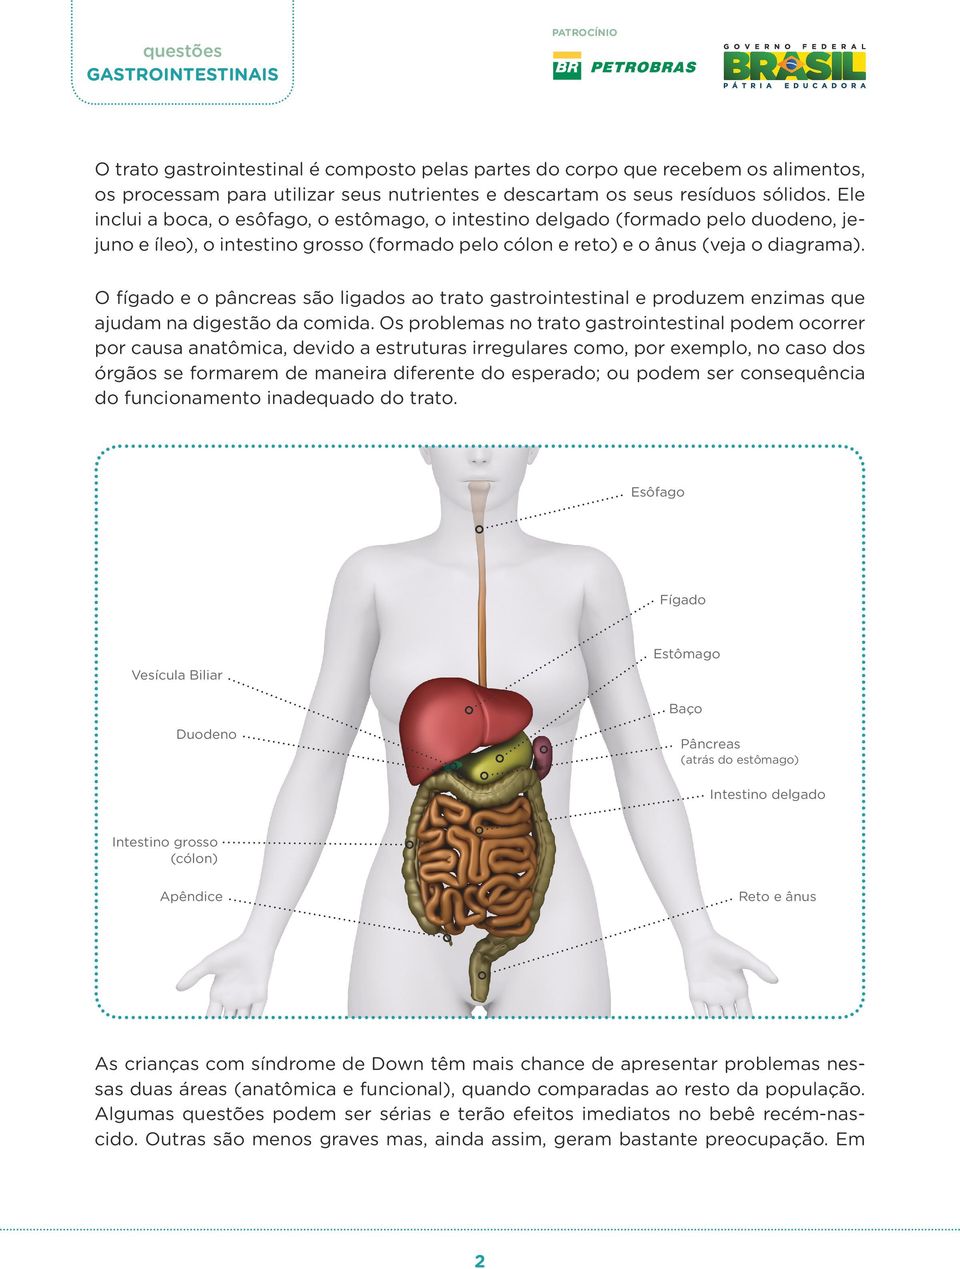 O fígado e o pâncreas são ligados ao trato gastrointestinal e produzem enzimas que ajudam na digestão da comida.